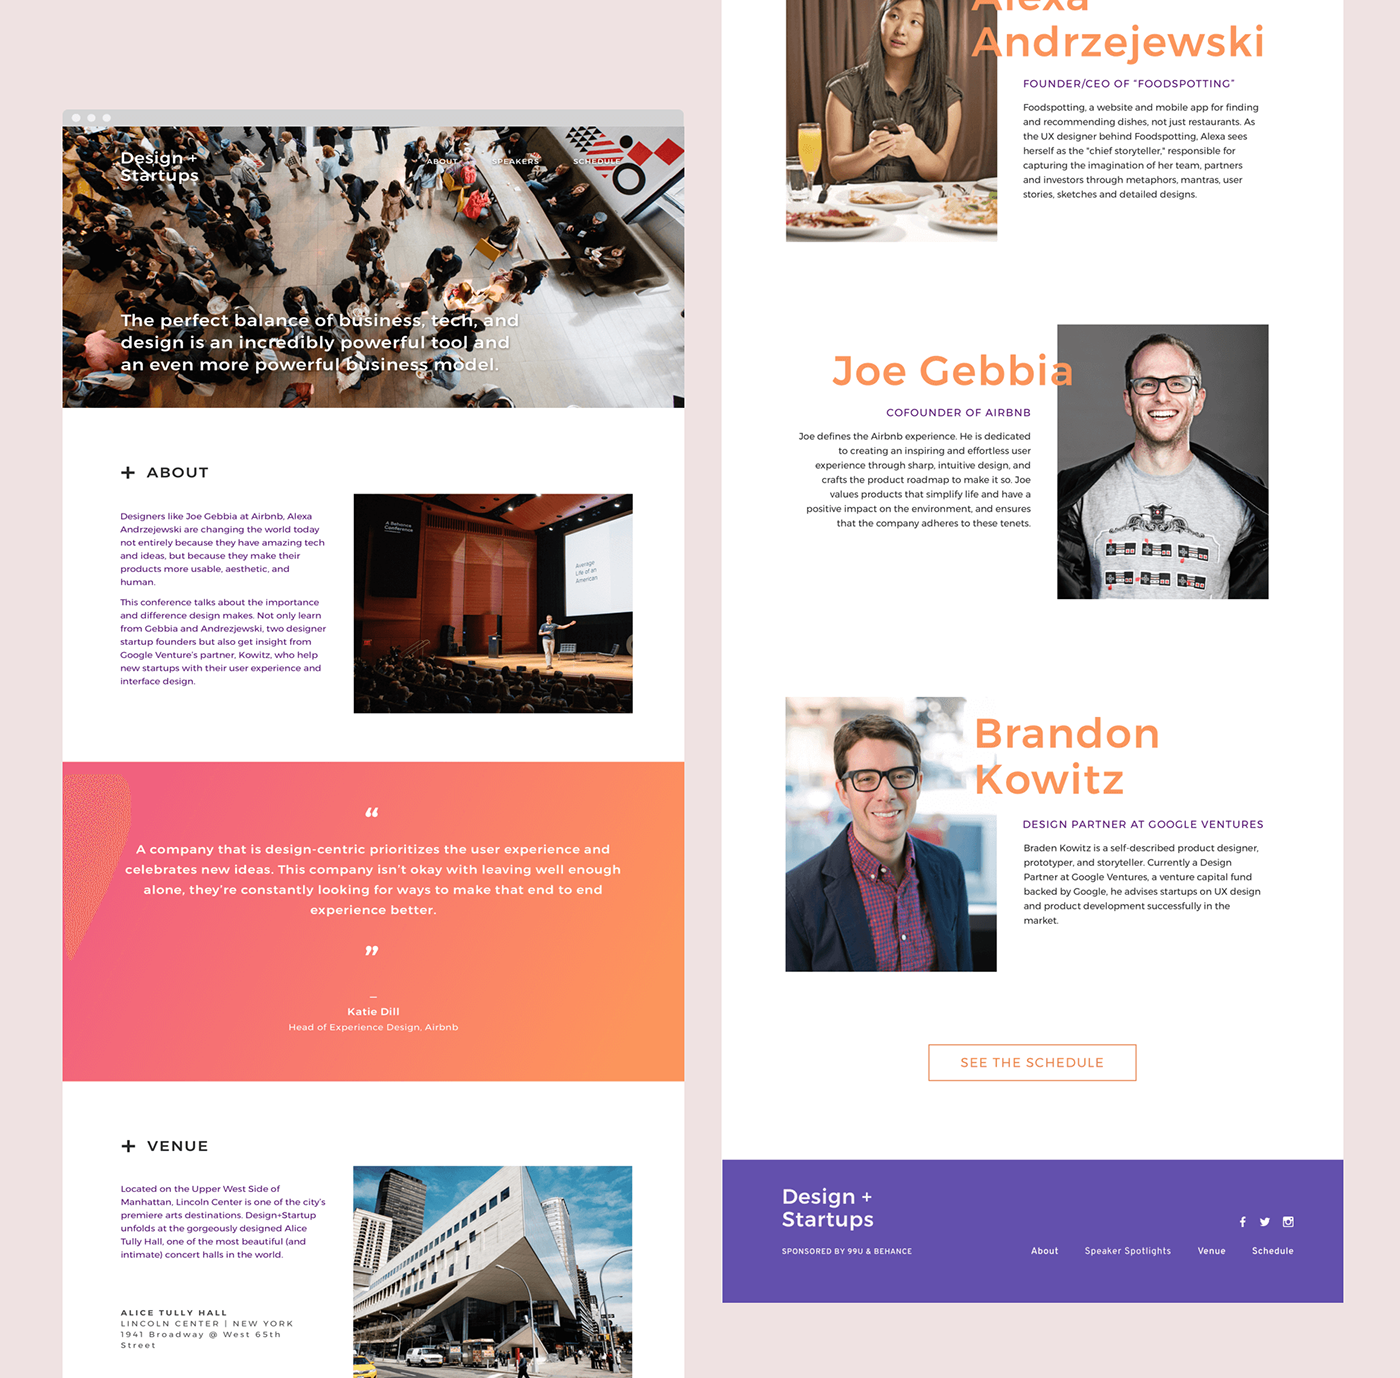 Event Website design festival design + startup joe gebbia gradient simple website brandon kowitz schedule